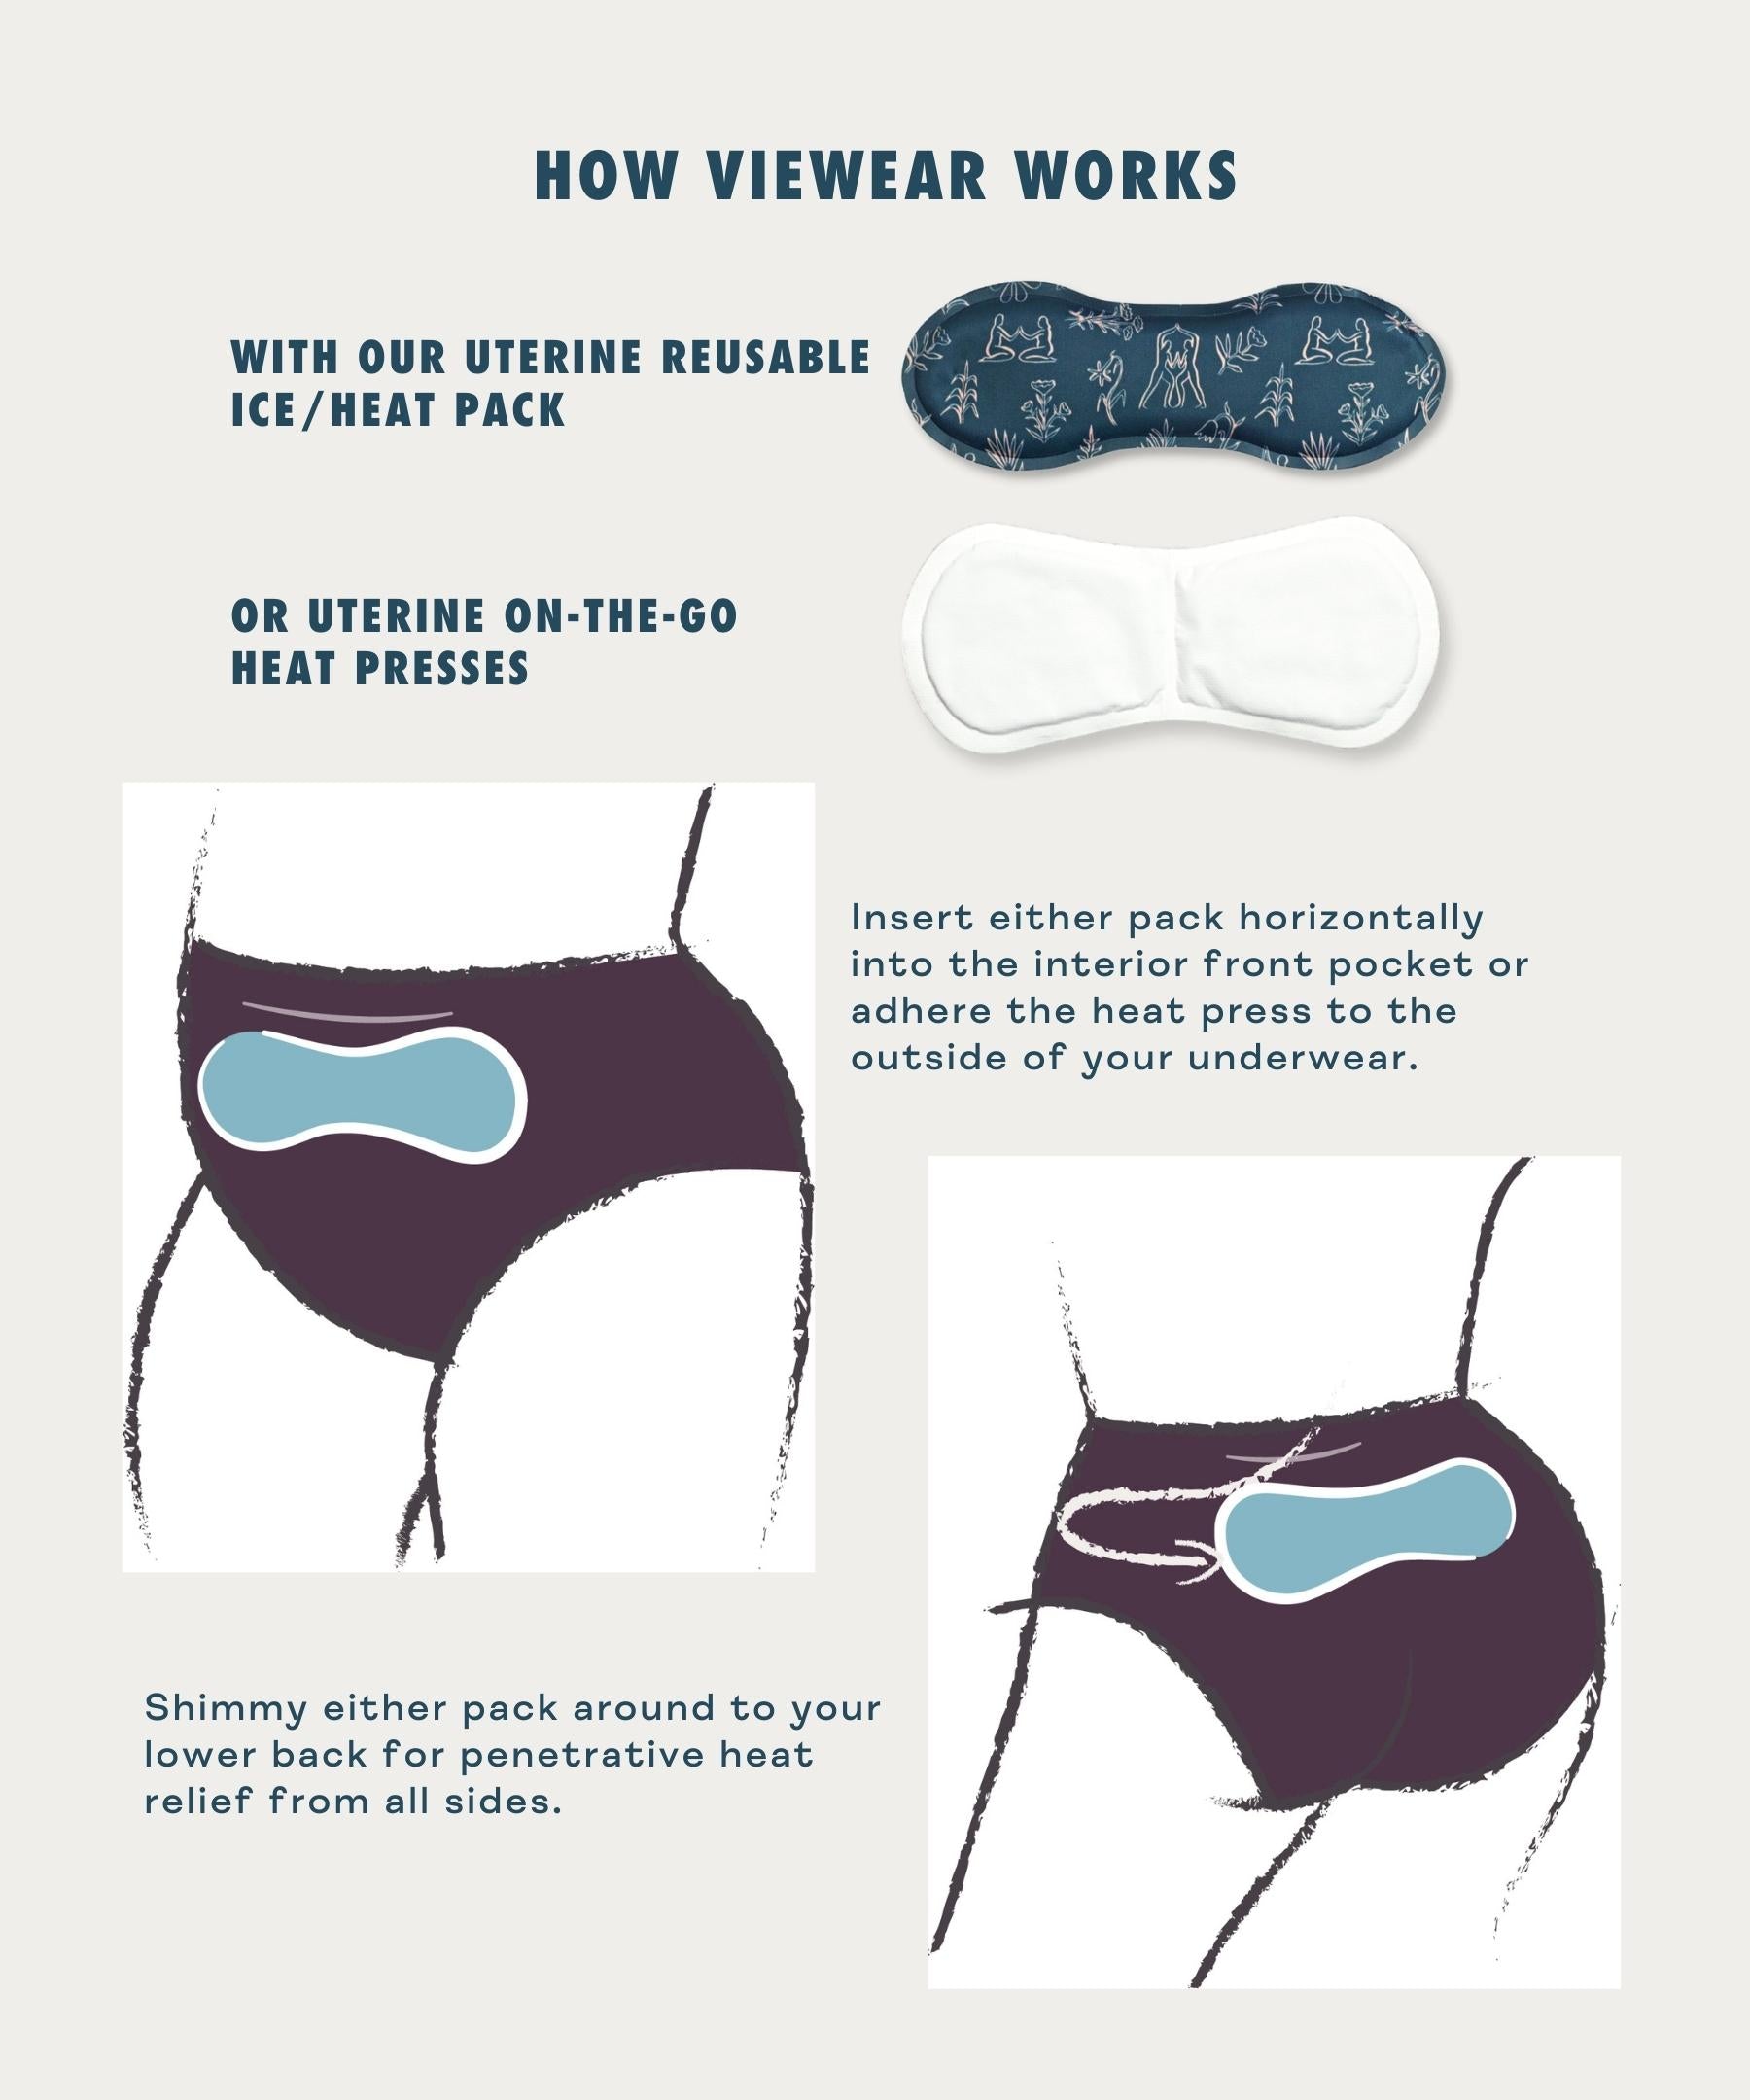 3-Piece Period Comfort Underwear Set